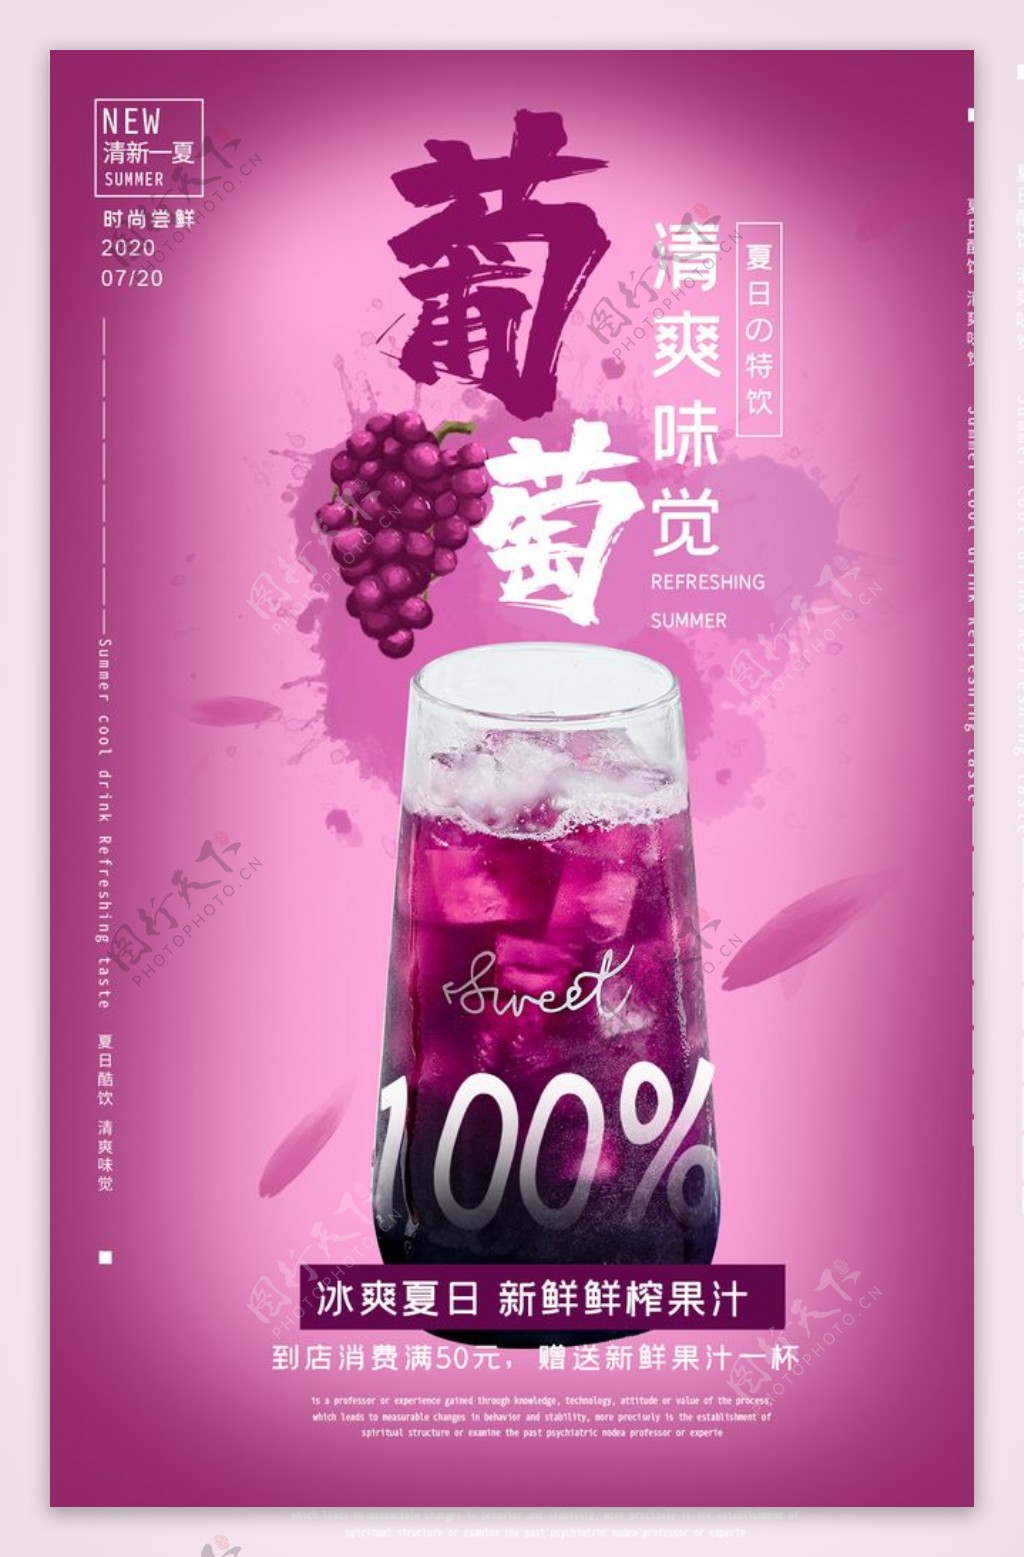 葡萄汁促销活动宣传海报素材